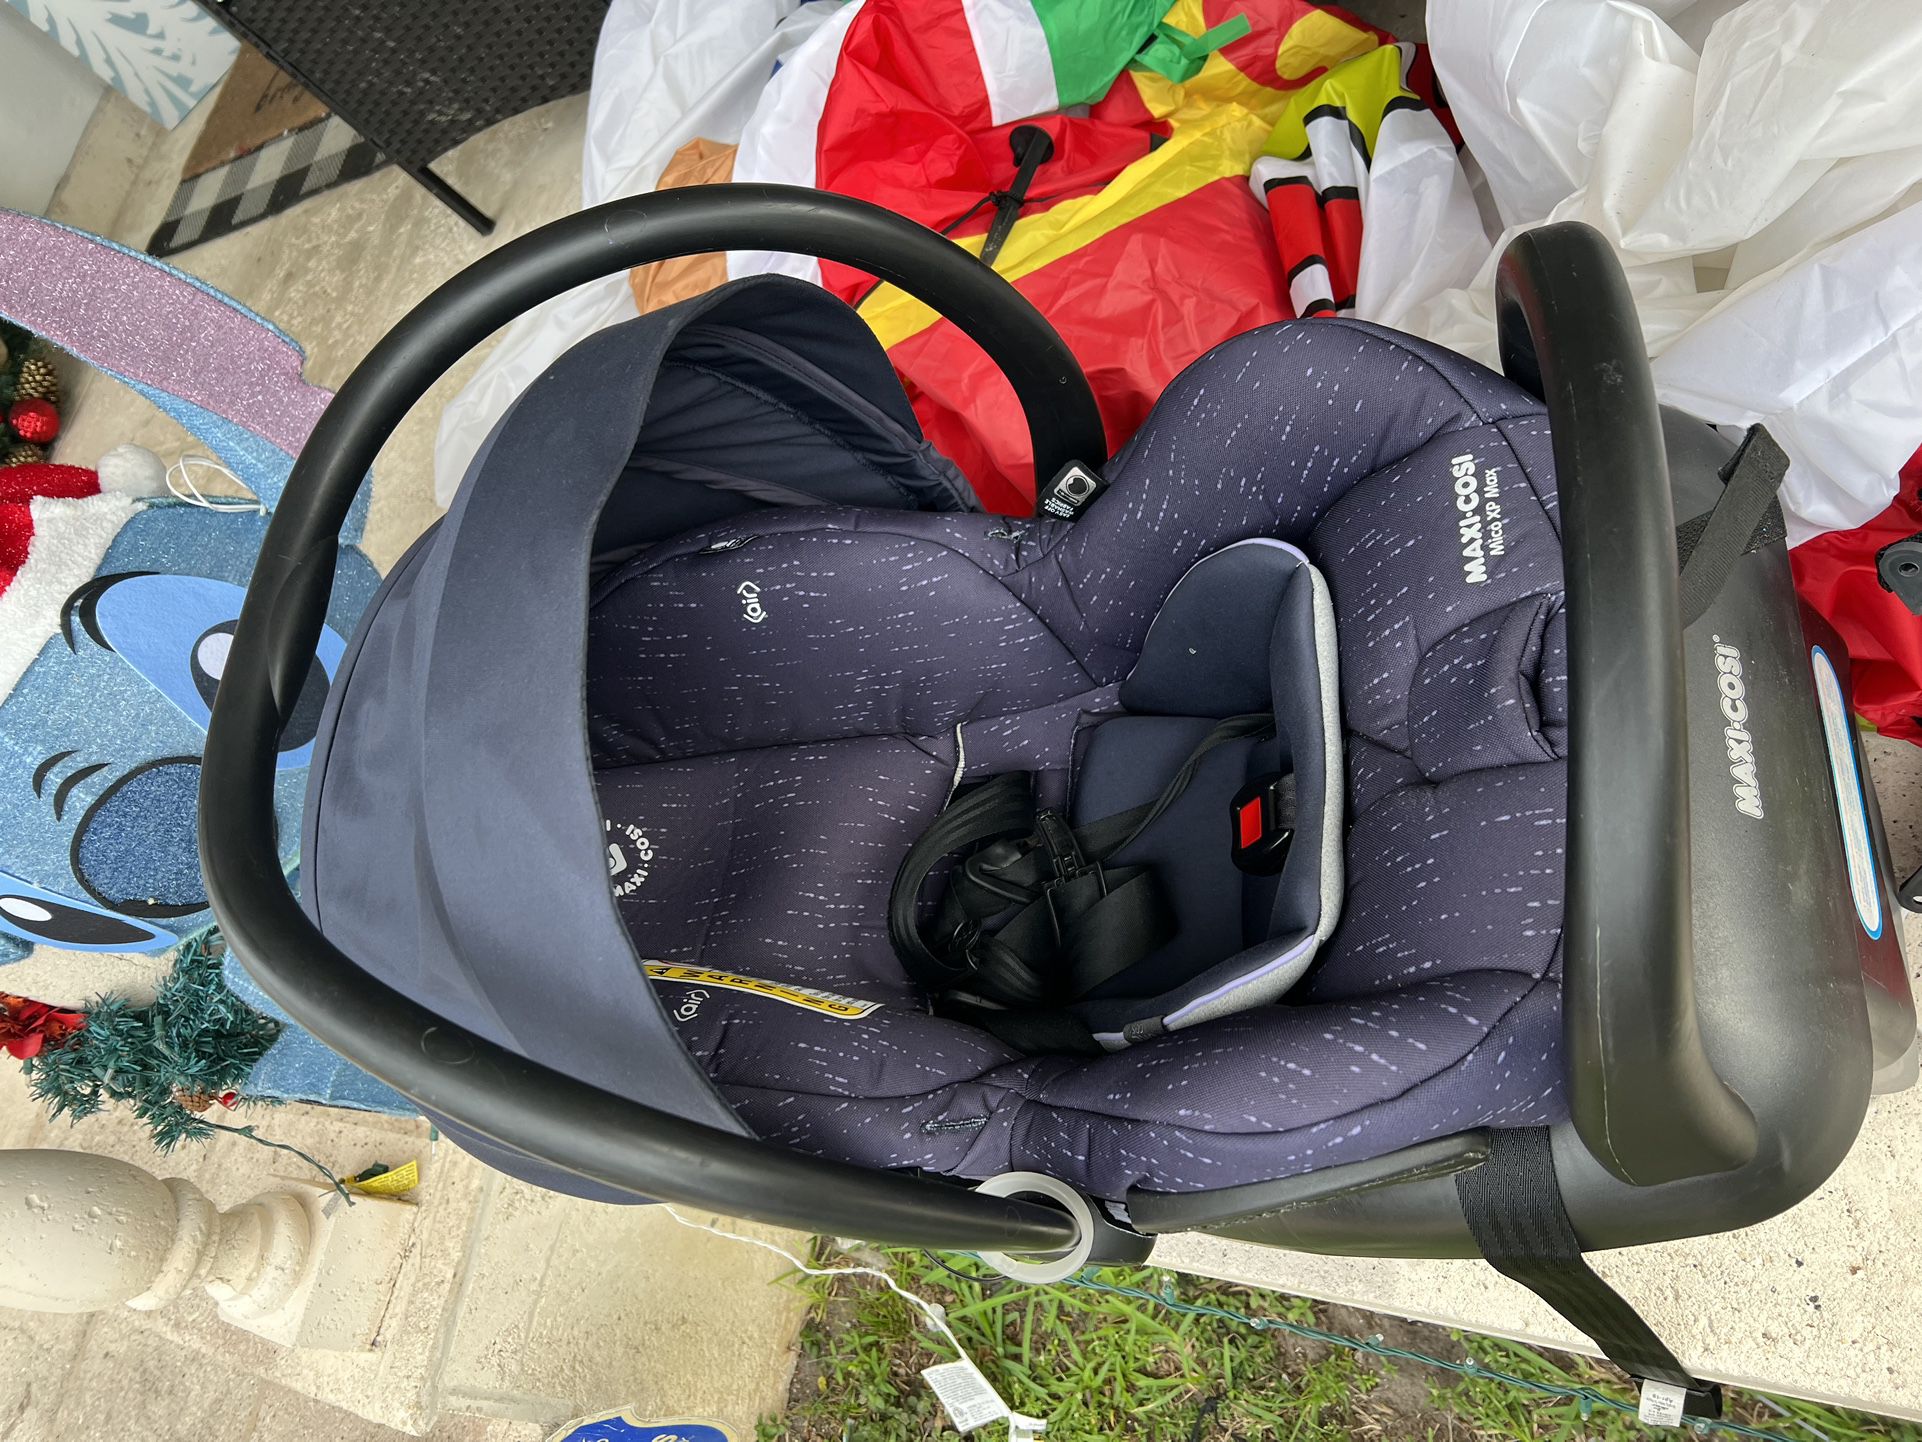 Maxi Cosi Infant Car Seat Extra Base 